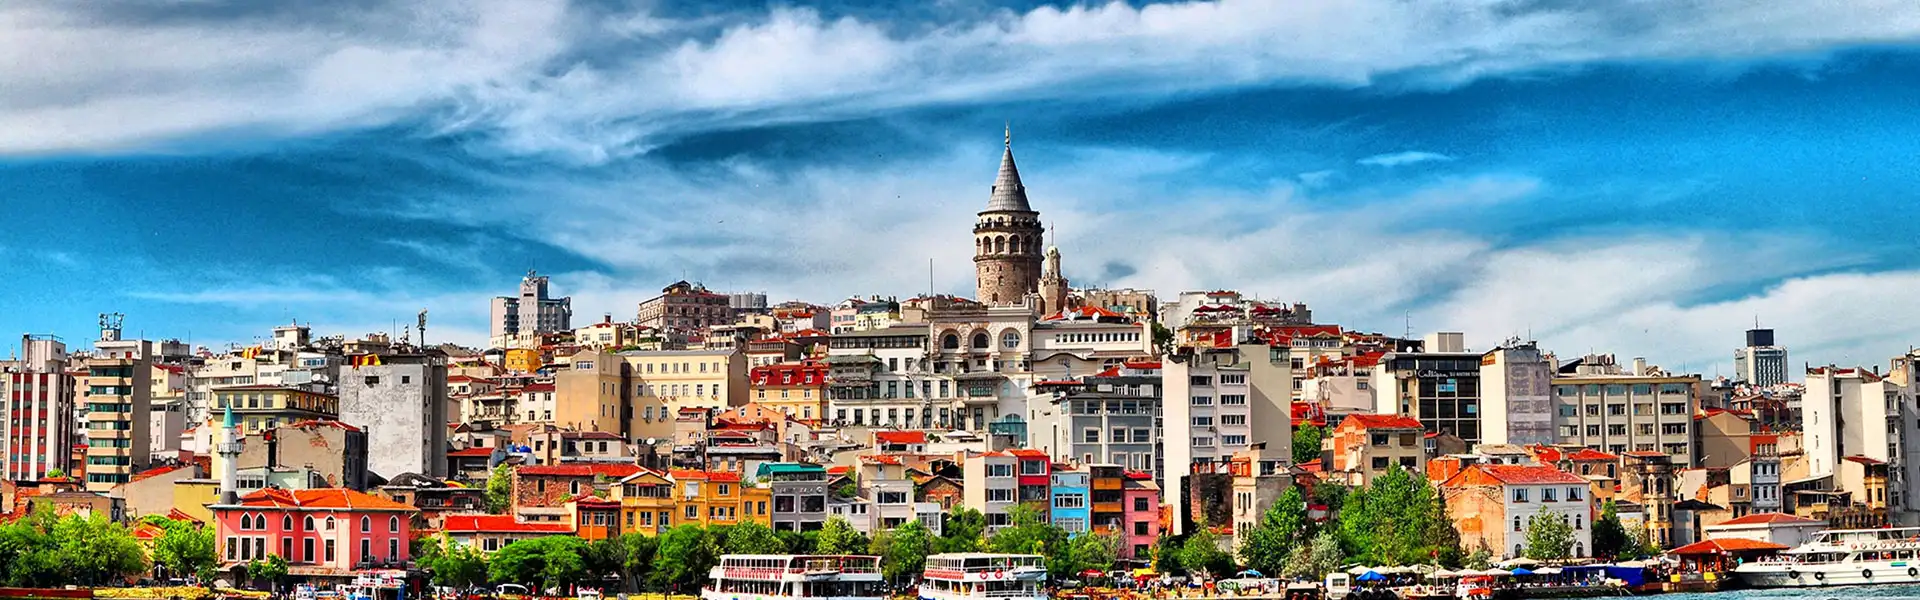 تور استانبول 24 اردیبهشت 5 روز